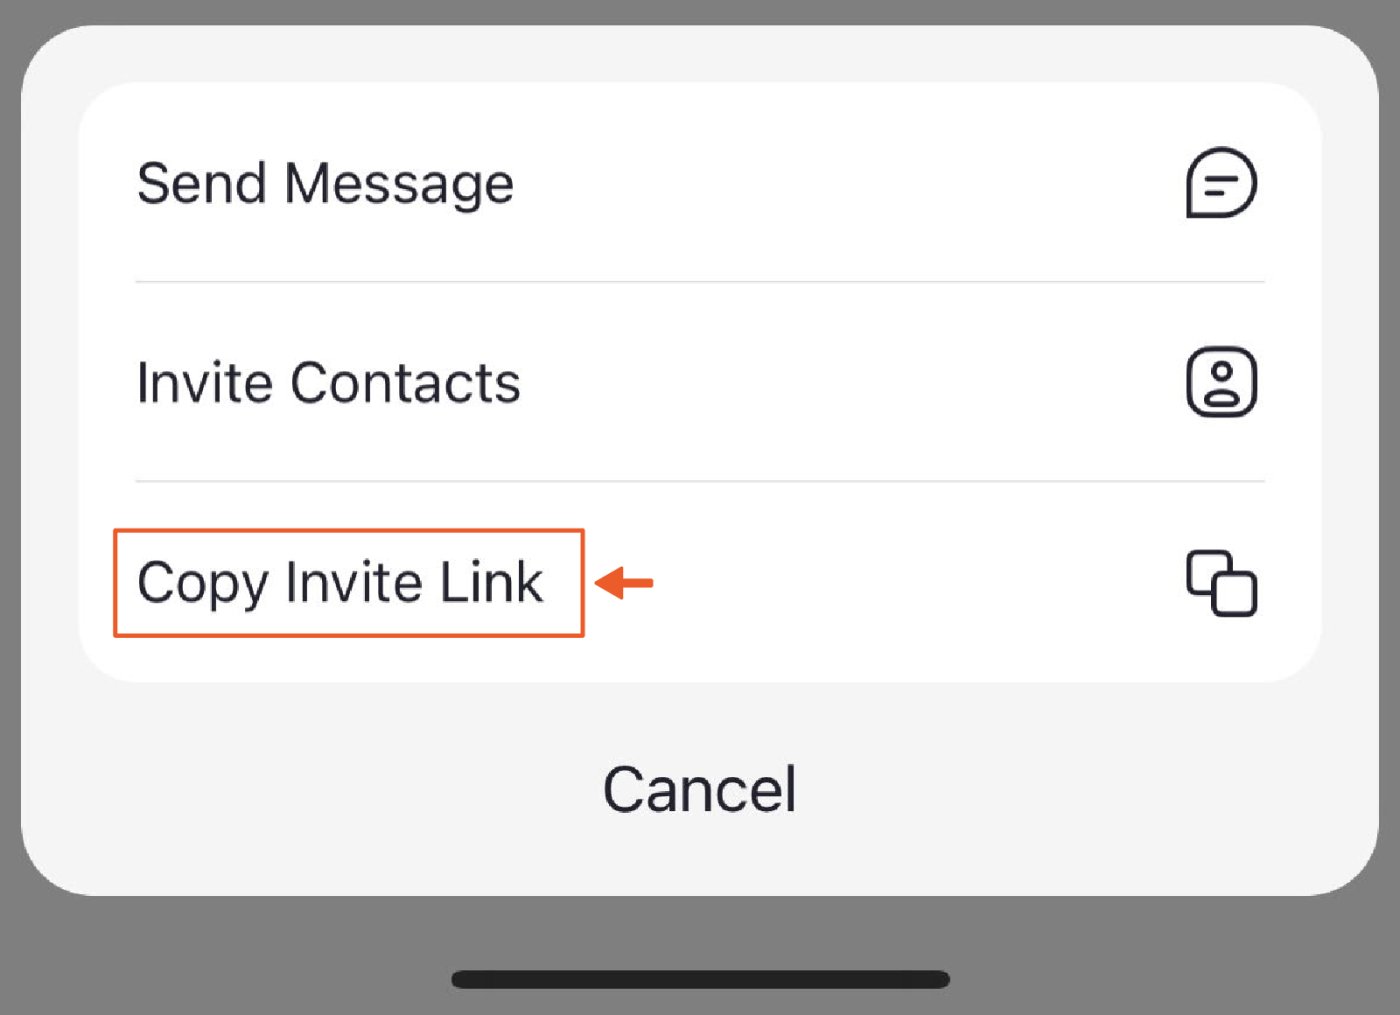 Facebook App Links: Never gonna give links up